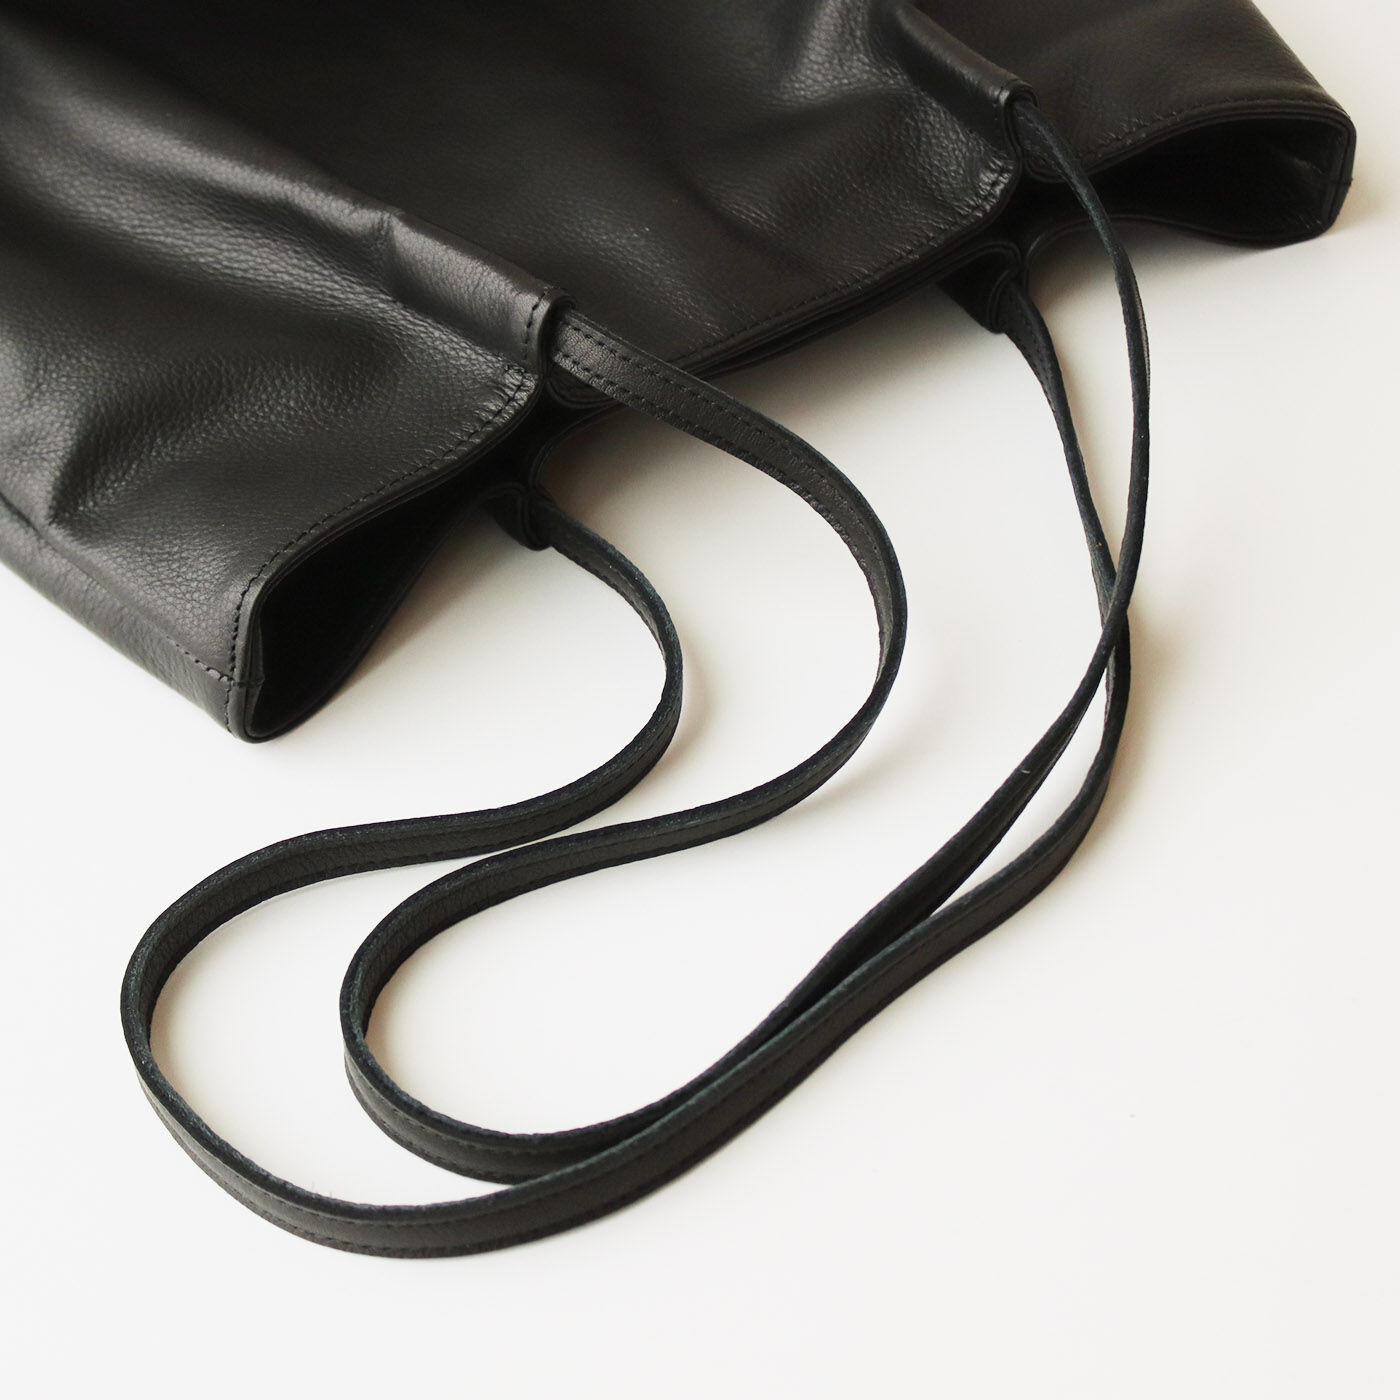 フェリシモコレクション|ブリリアンス神戸基金 KOBE PORT TOWER 福岡の鞄作家が作った 職人本革のカーポラヴォーロトート〈Black〉|少し長めの持ち手にしたので肩掛け＆手持ちでも使い心地は◎